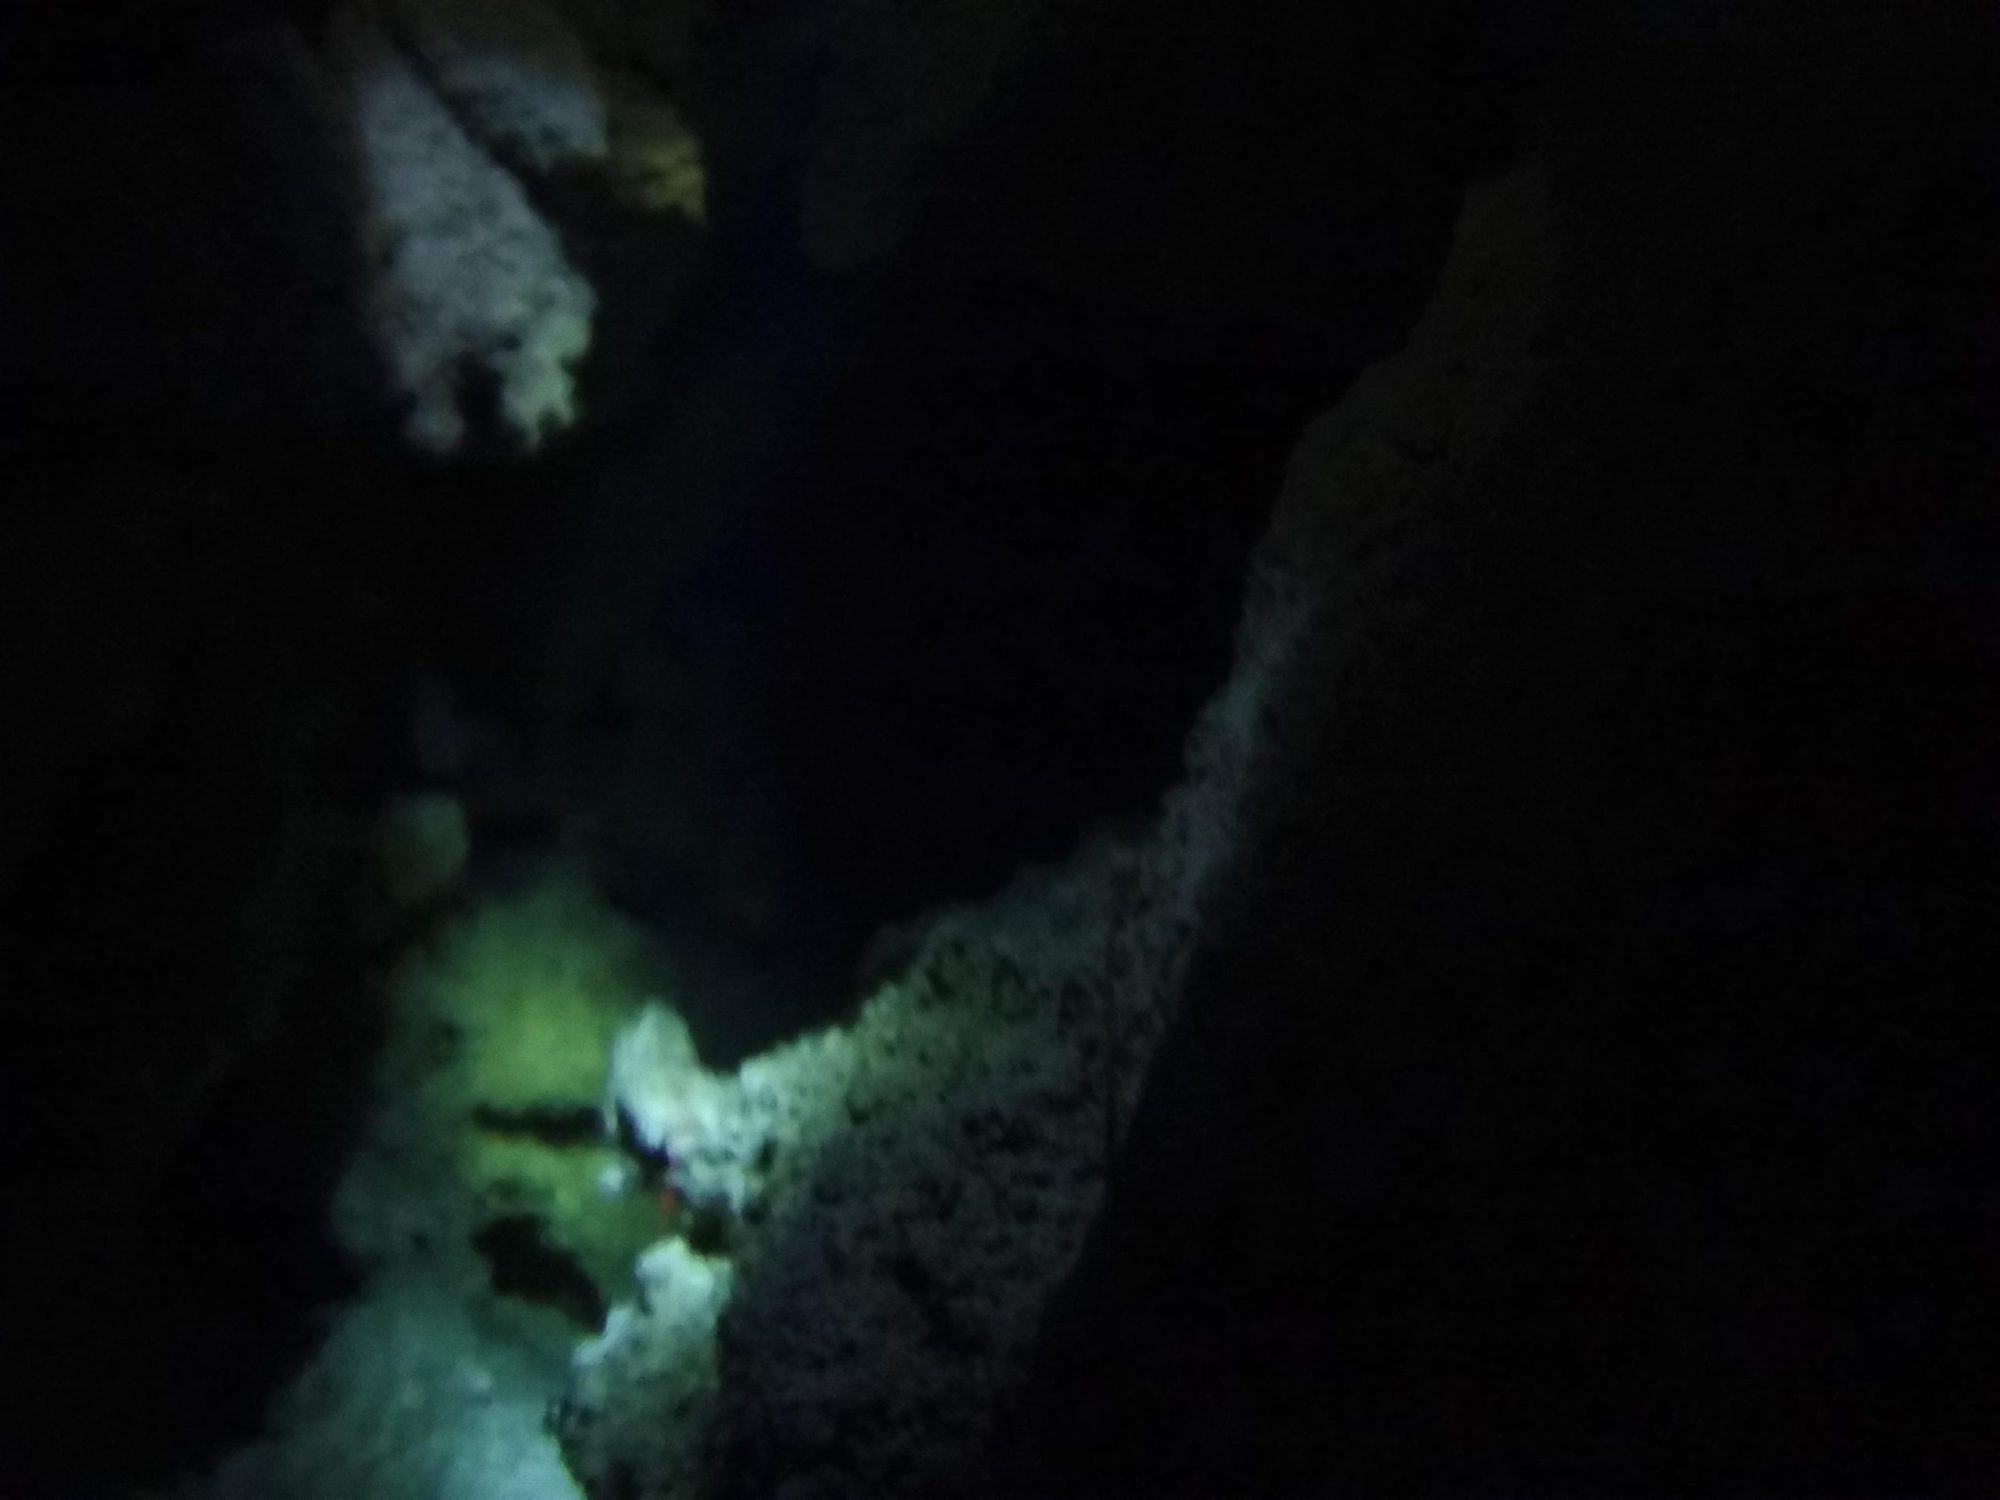 kristal cave in kupang underwater